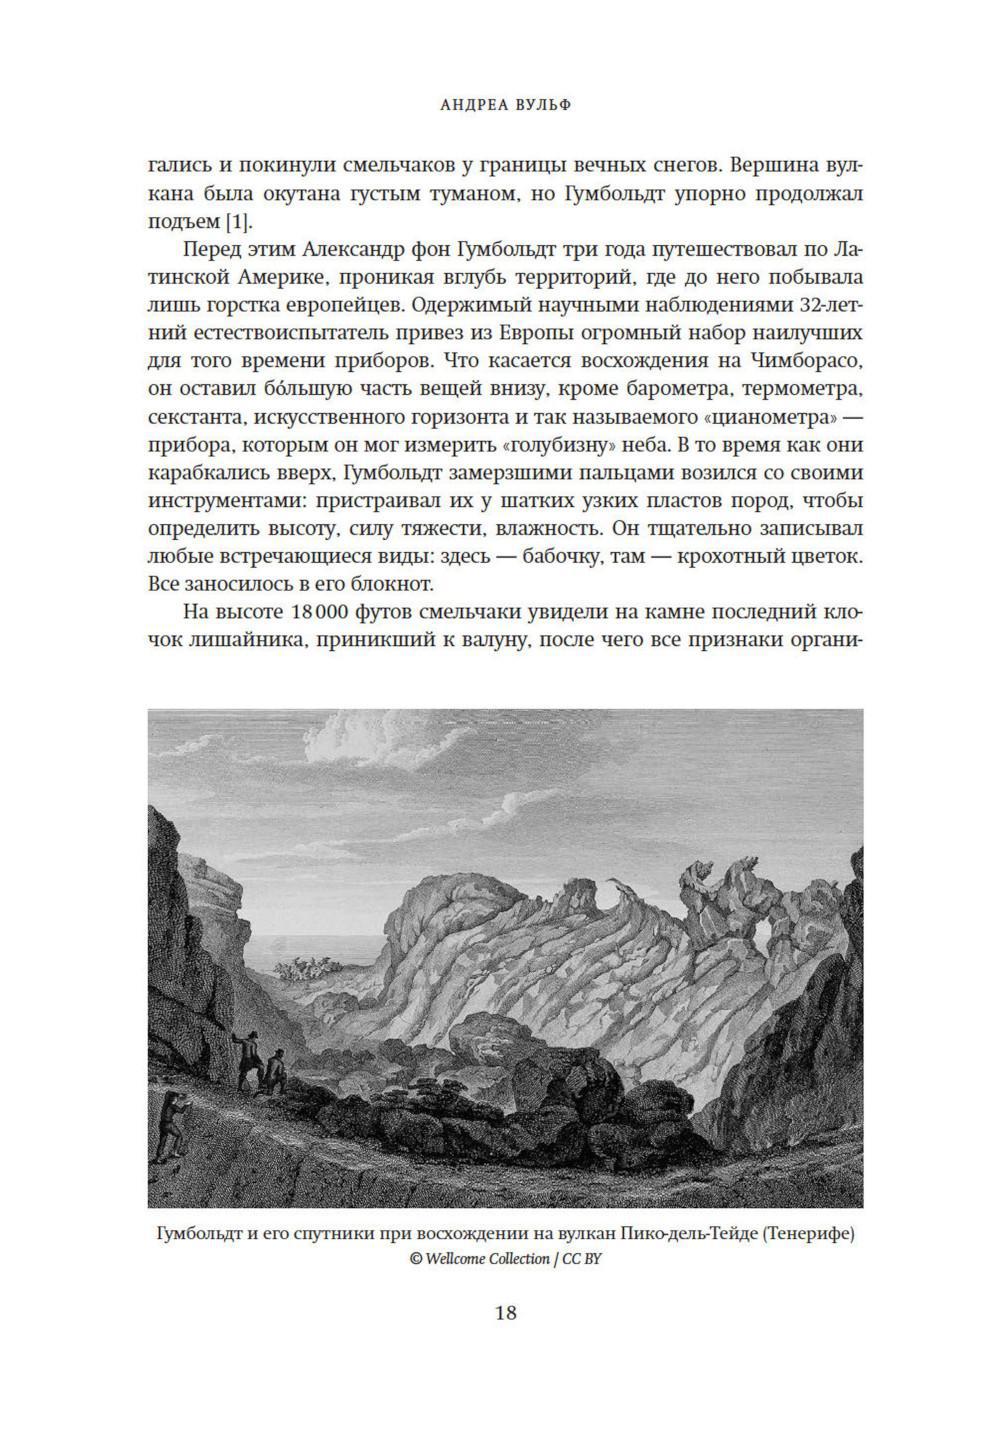 Открытие природы: Путешествия Александра фон Гумбольдта